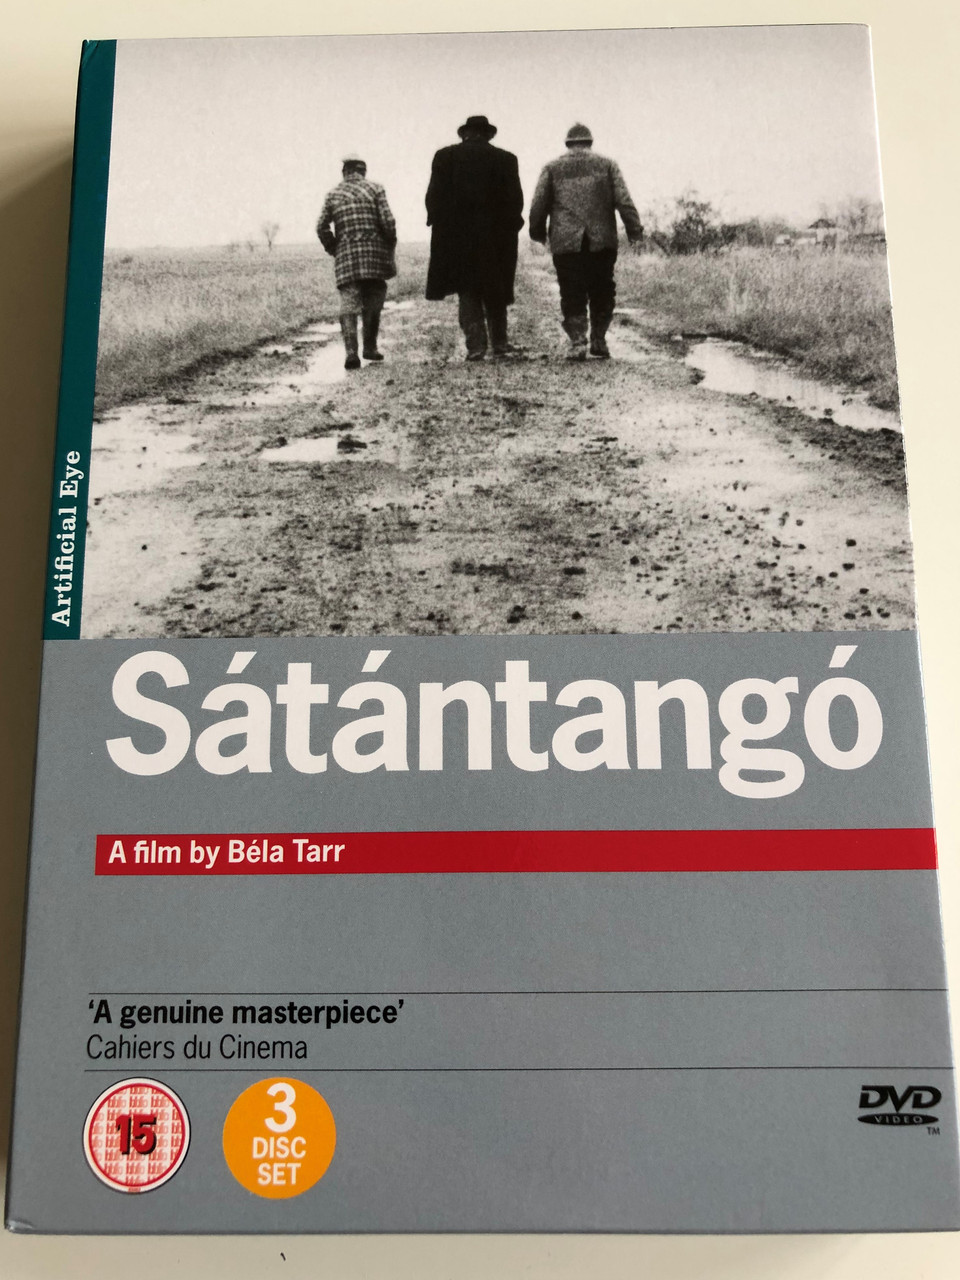 Sátántangó 3 disc DVD SET 1994 Satan's Tango / Directed by Béla Tarr /  Starring: Mihály Víg, Putyi Horváth, László Lugossy - bibleinmylanguage